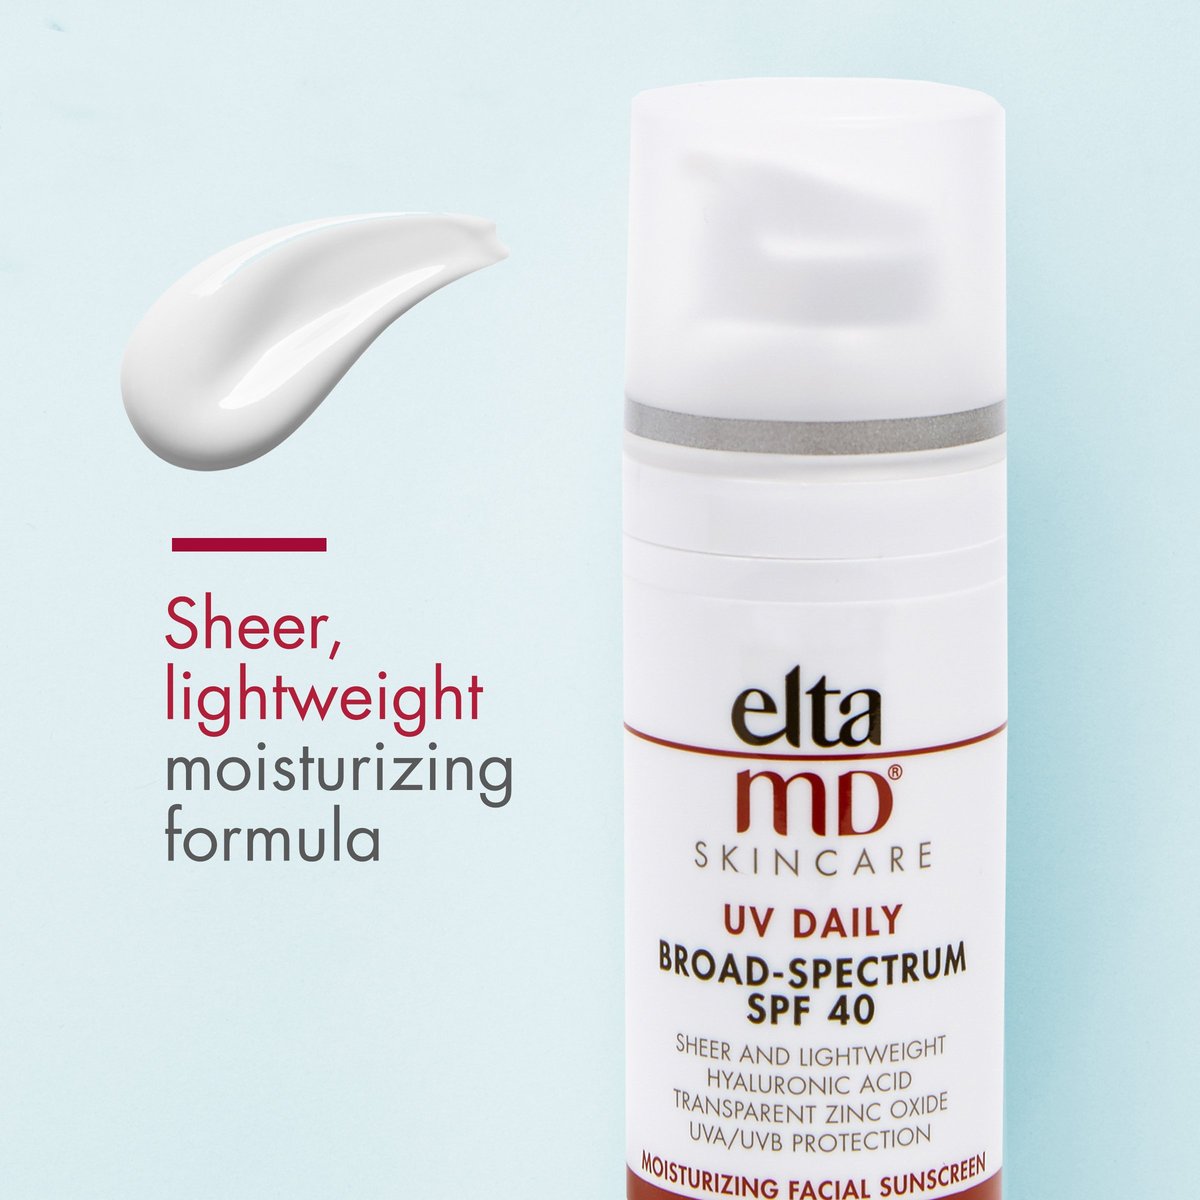 EltaMD SPF 40 UV Daily Pump | Bev Sidders Skincare